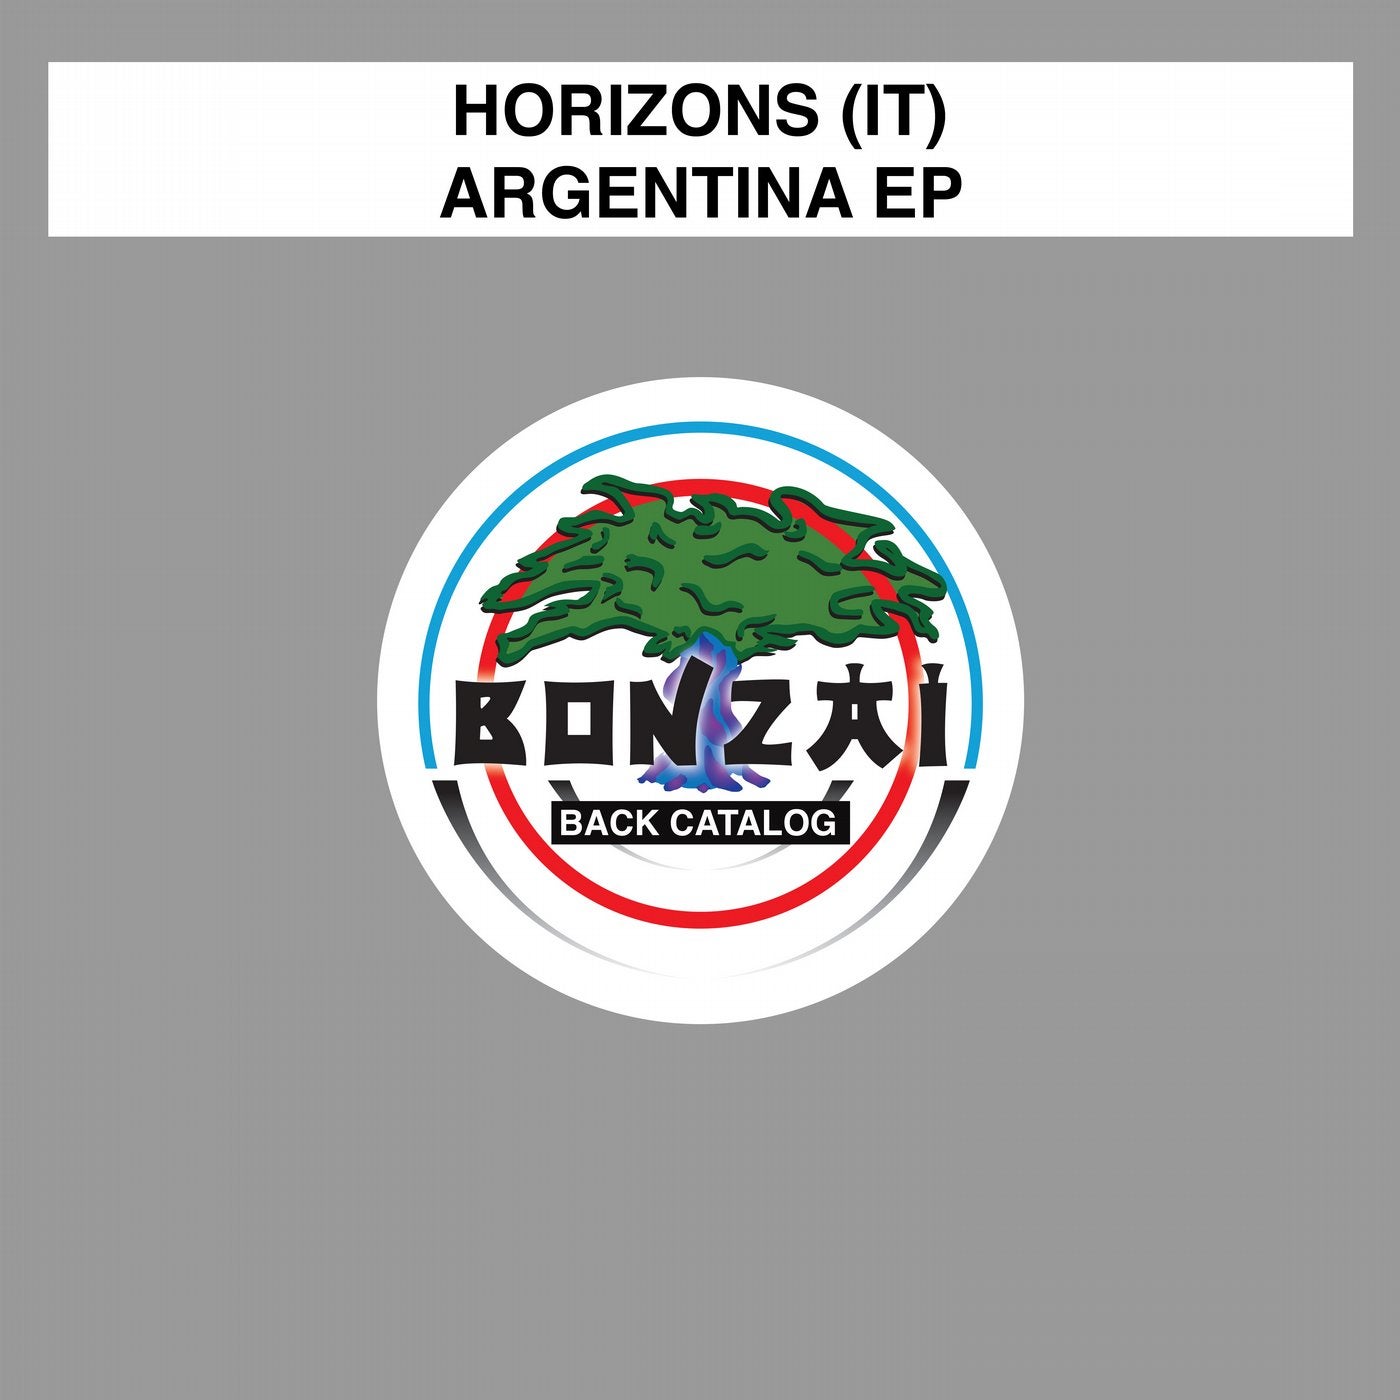 Argentina EP